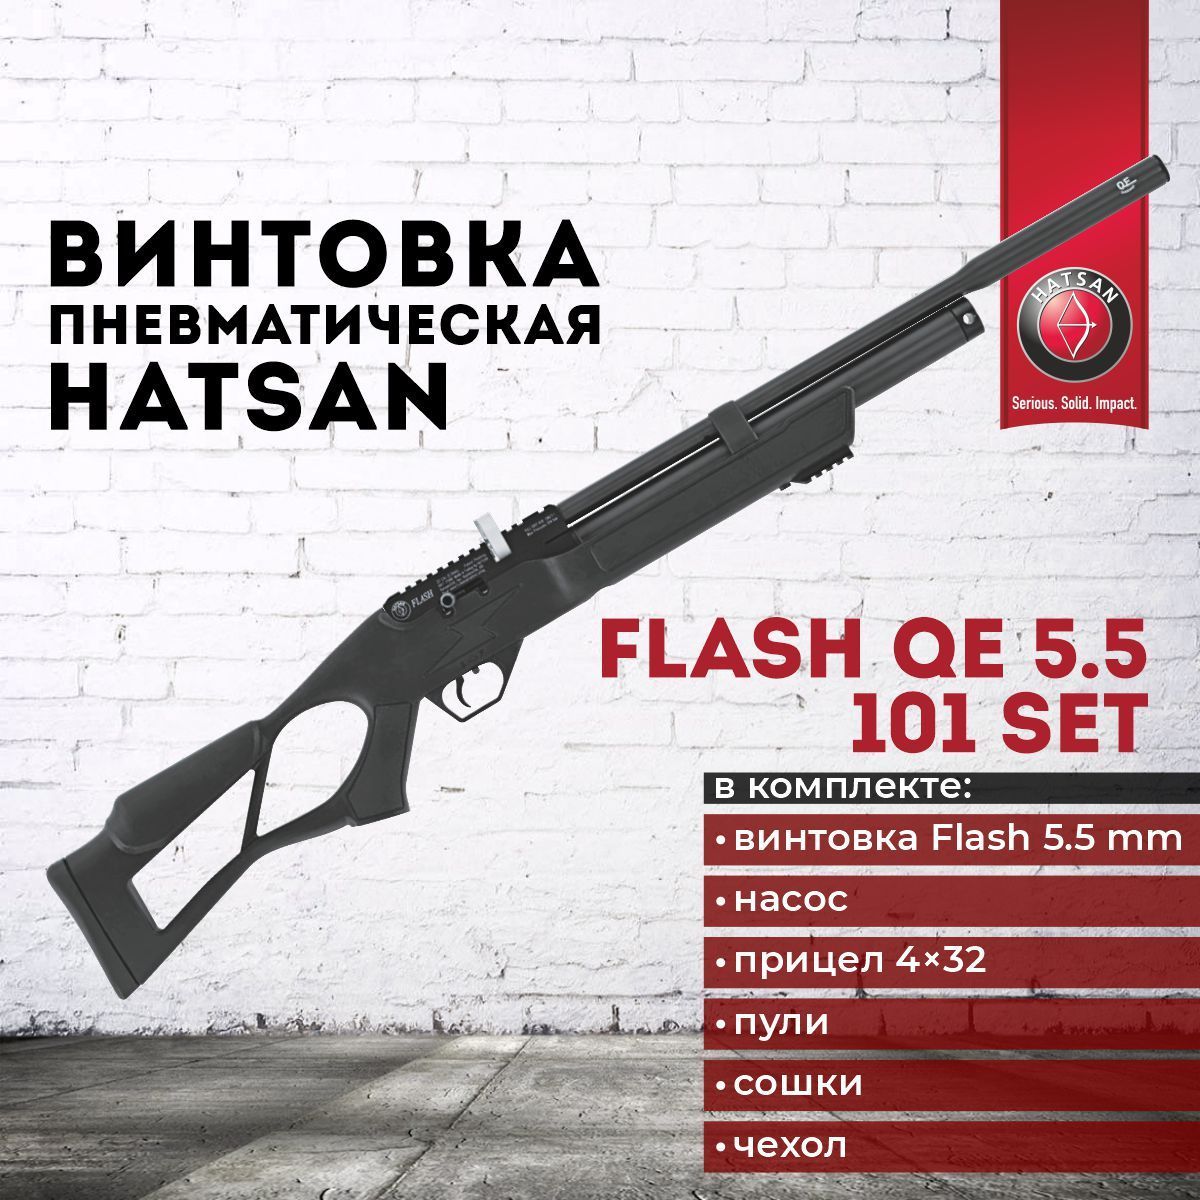 Flash 101. Hatsan Flash 101 qe Set 6.35 чертеж. Hatsan Flash 101 qe Set 6.35 крепление ствола. Hatsan Flash 22 cal 5.5 mm технические характеристики.